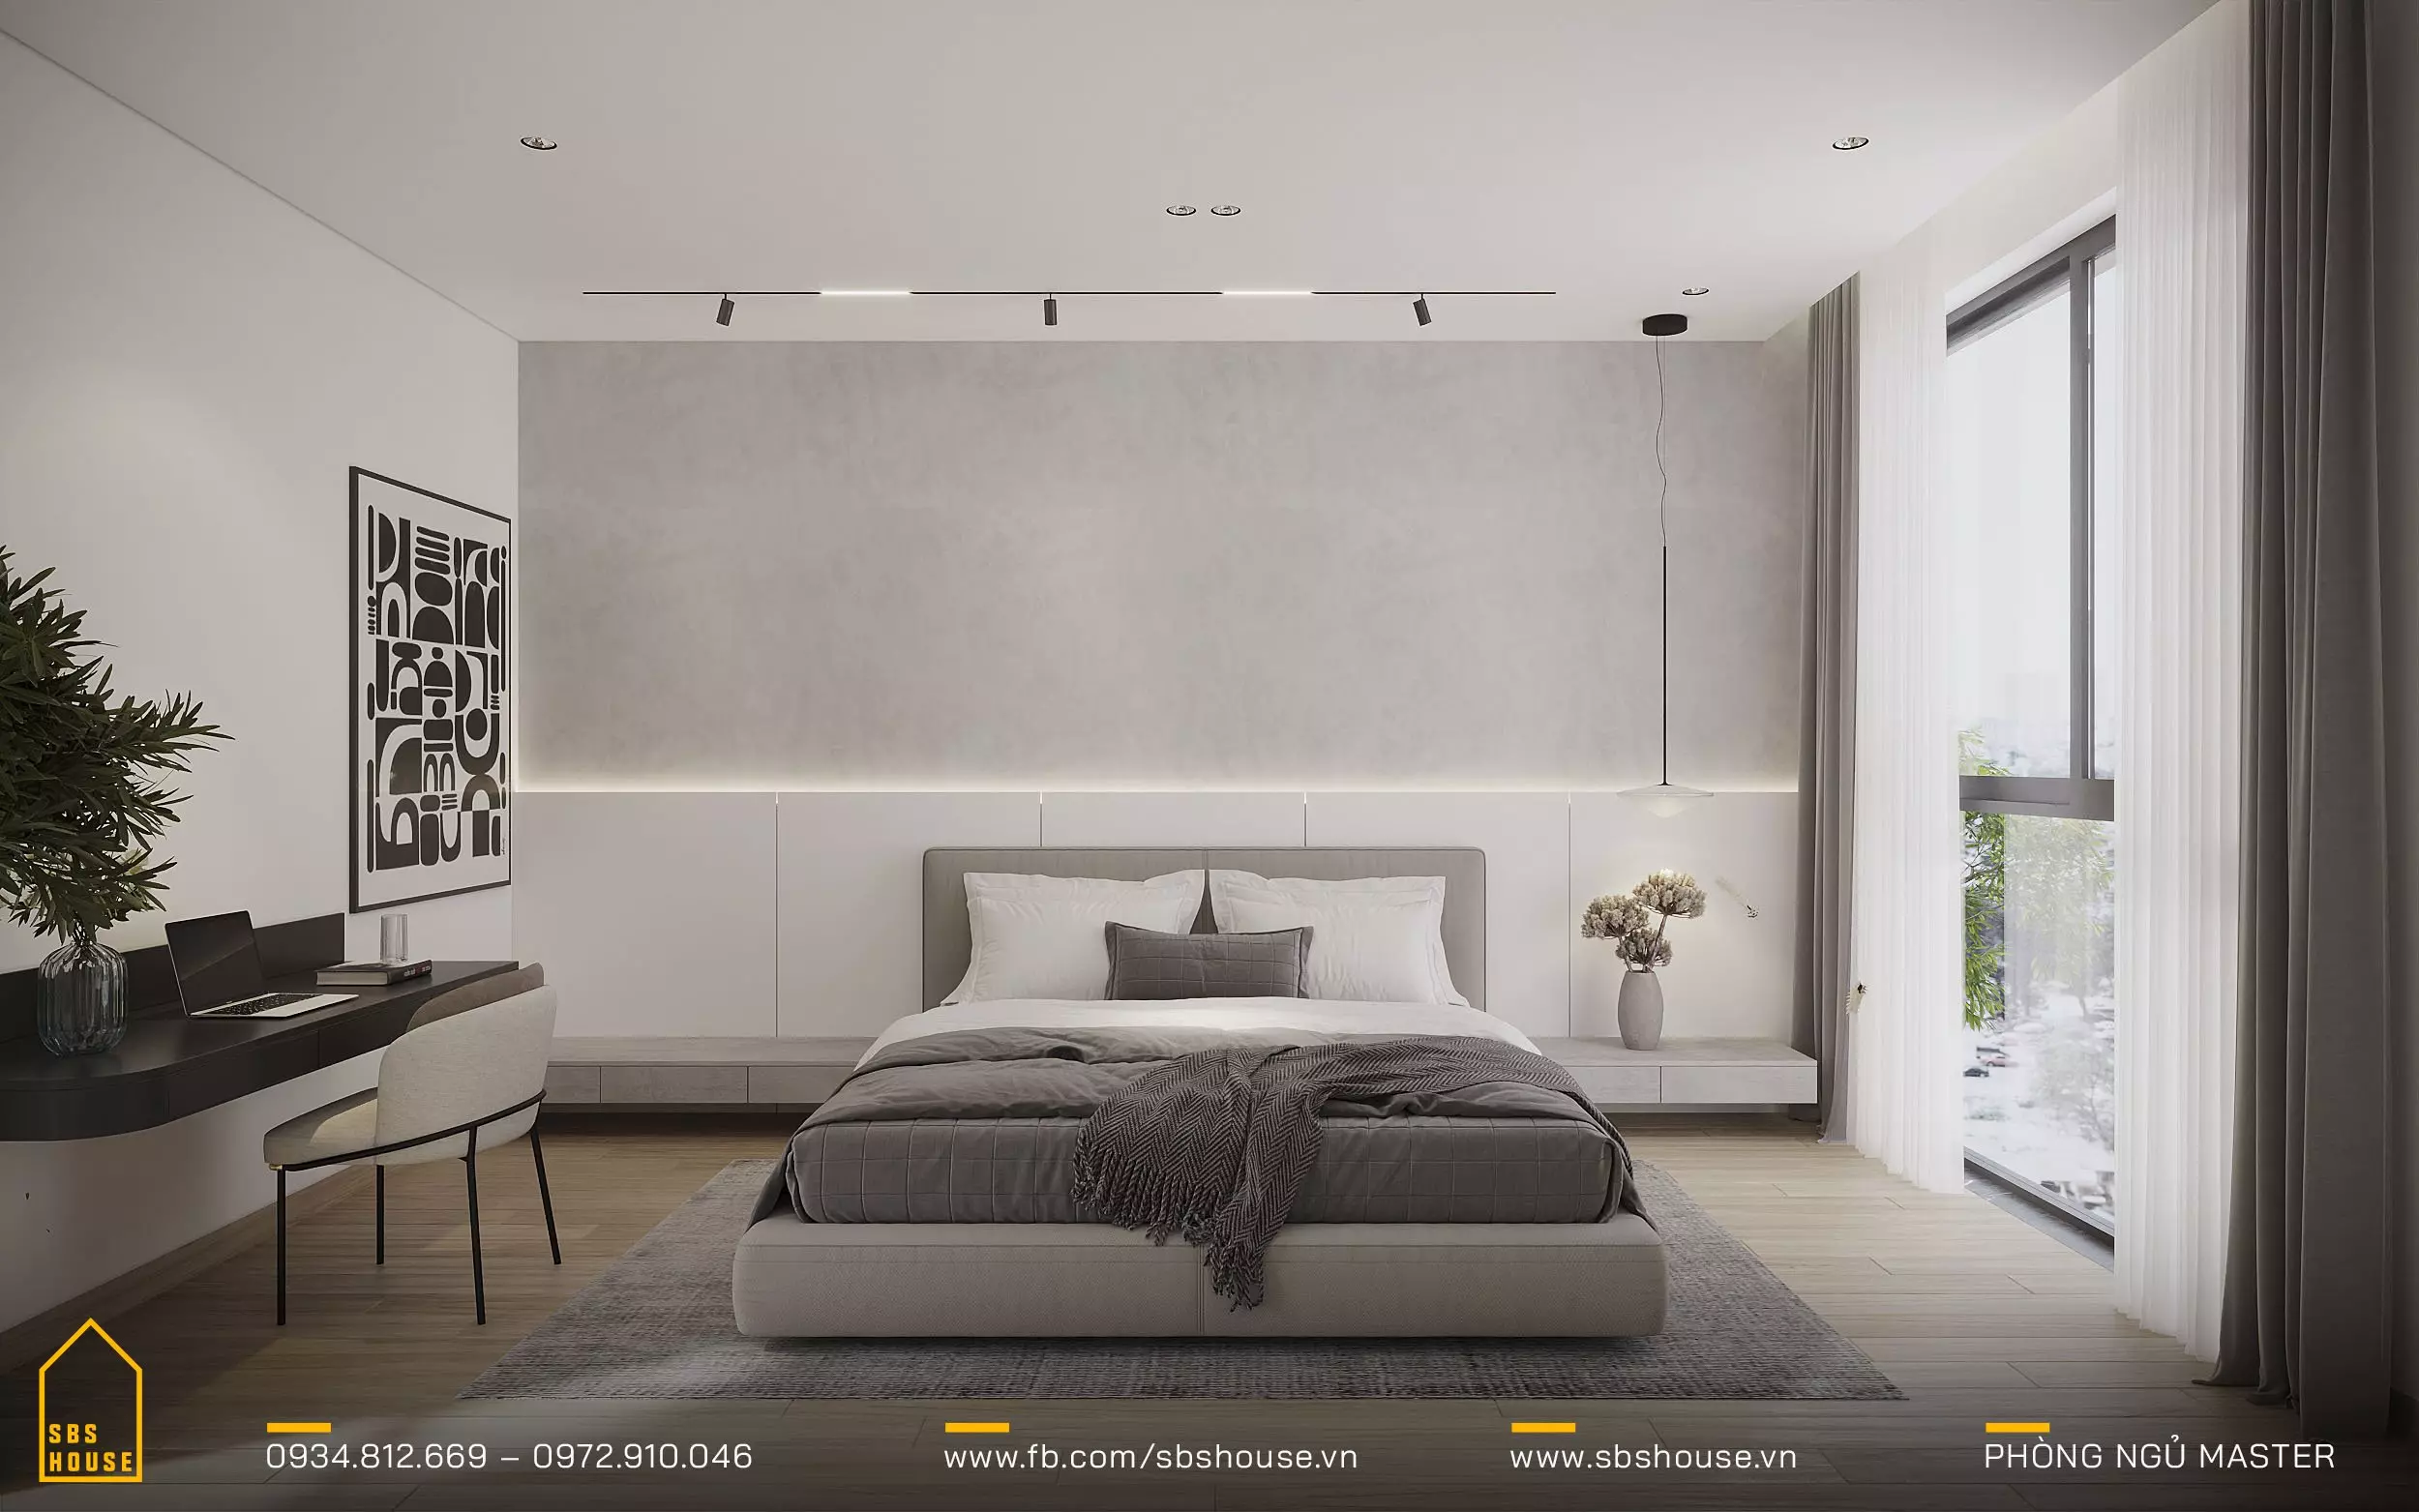 Phòng ngủ master được thiết kế với tủ quần áo âm tường và ánh sáng âm dương, tạo nên một không gian riêng tư và thư giãn. 